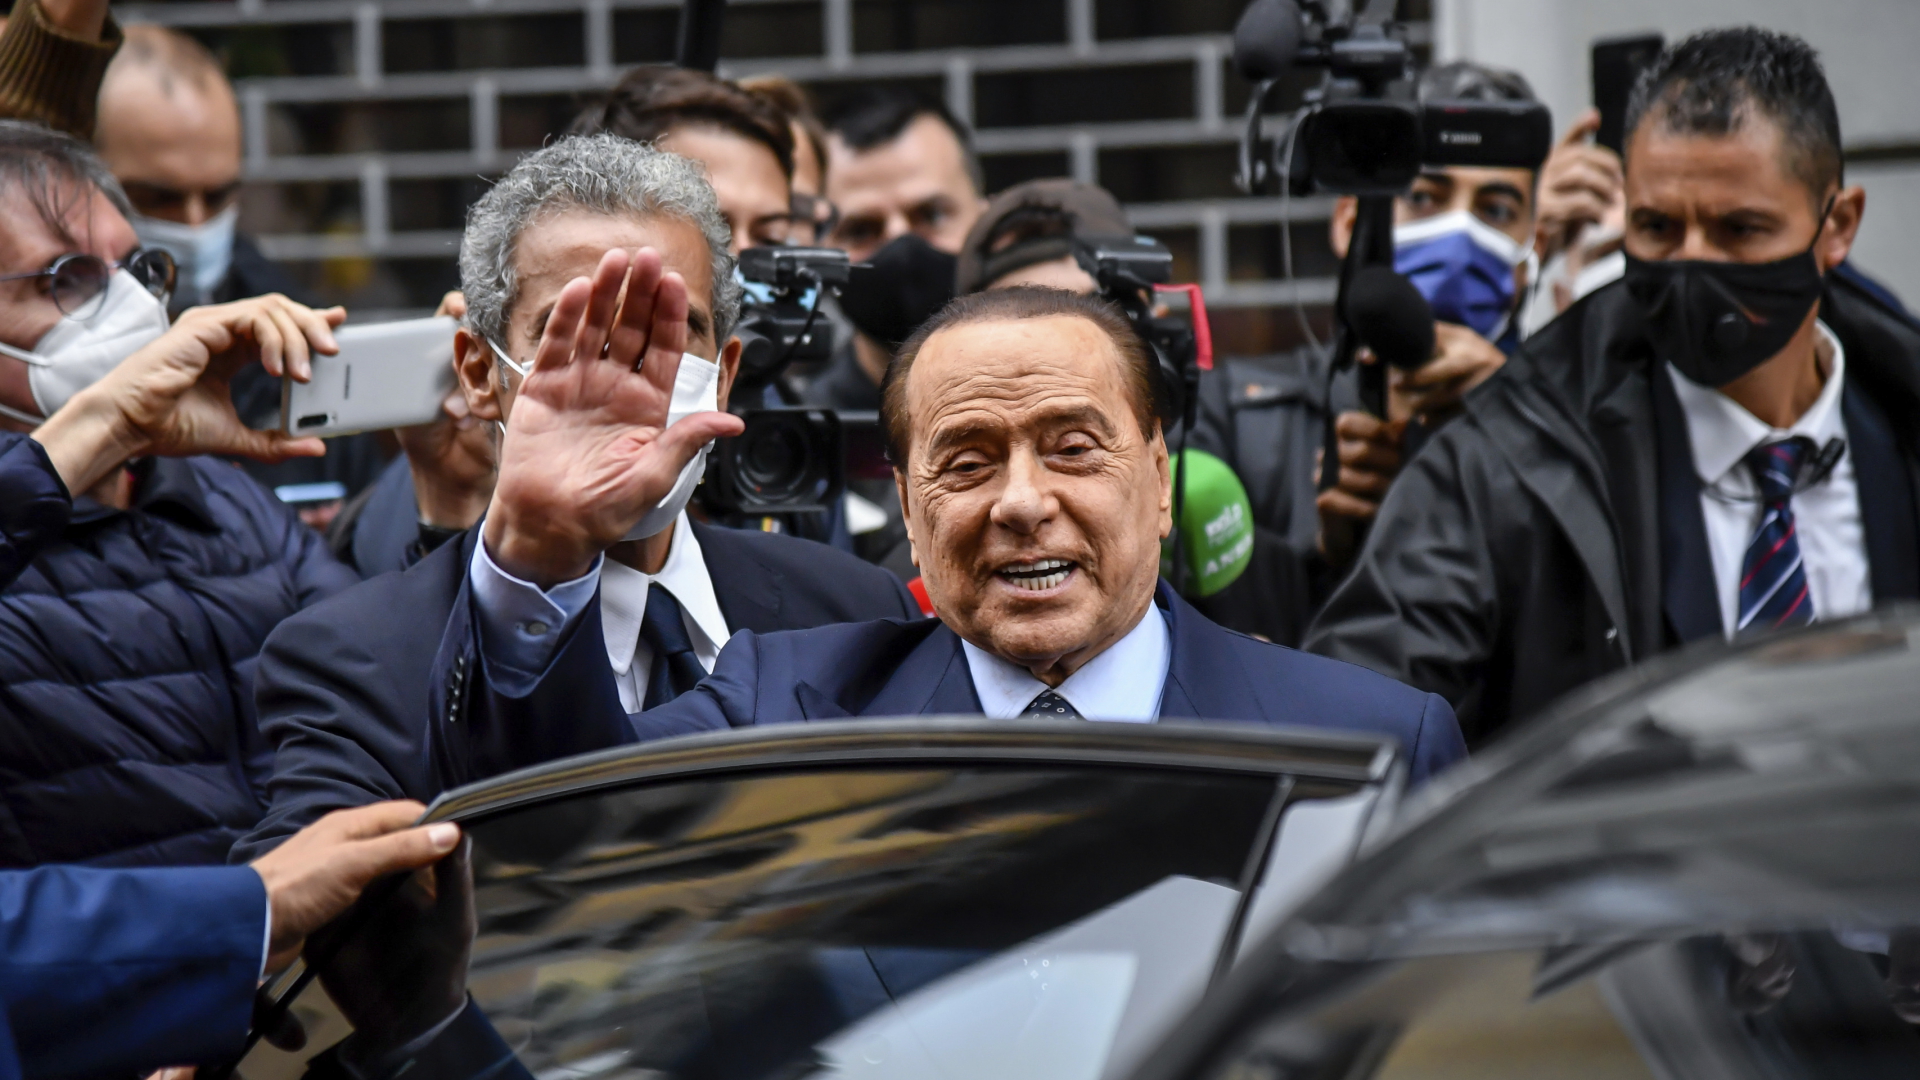 Silvio Berlusconi winkt, als er nach dem Verlassen eines Wahllokals in ein Auto steigt (Archiv).